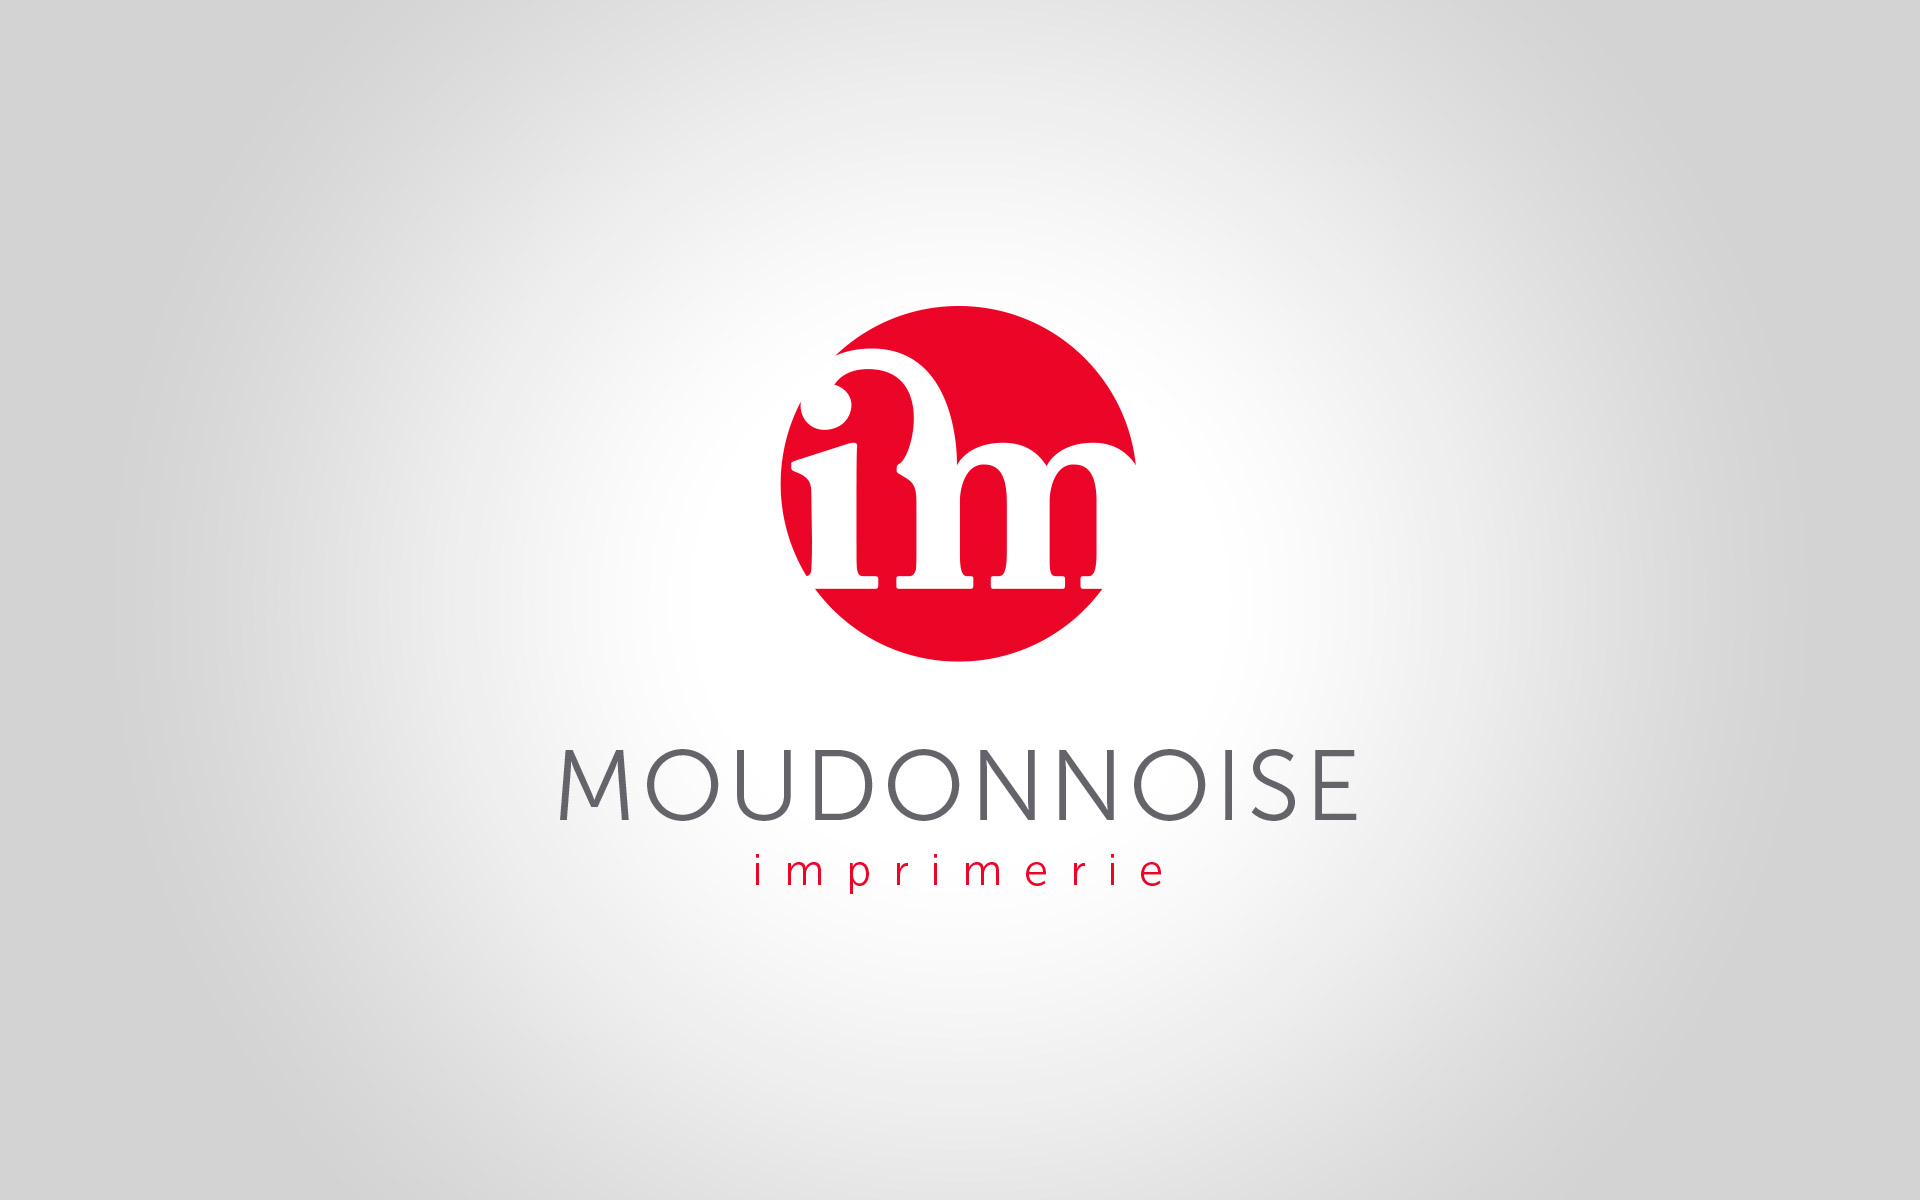 Moudonnoise Imprimerie